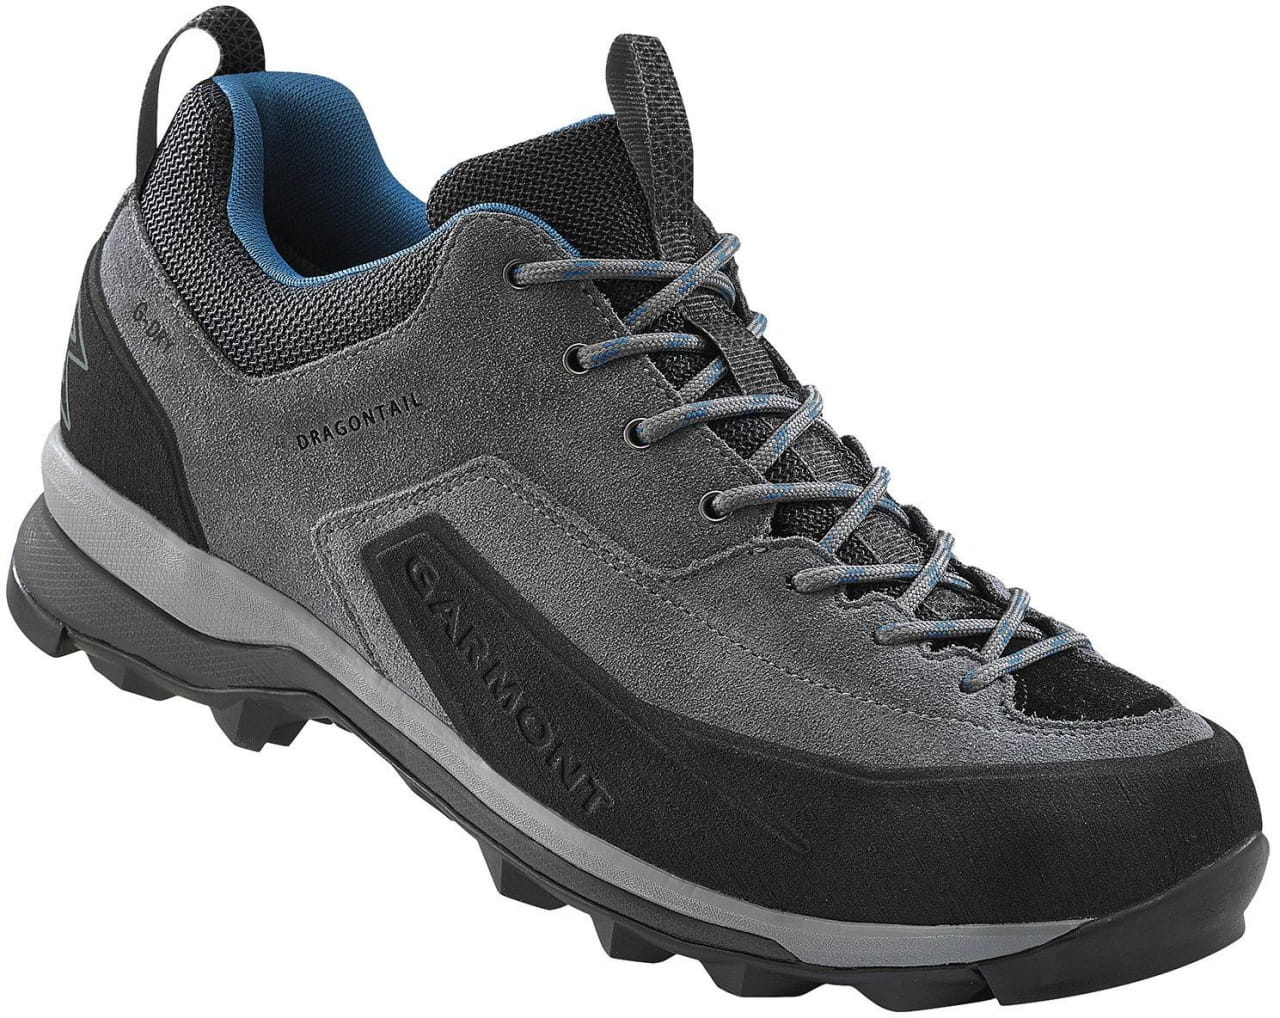 Outdoor-Schuhe für Männer Garmont Dragontail G-Dry